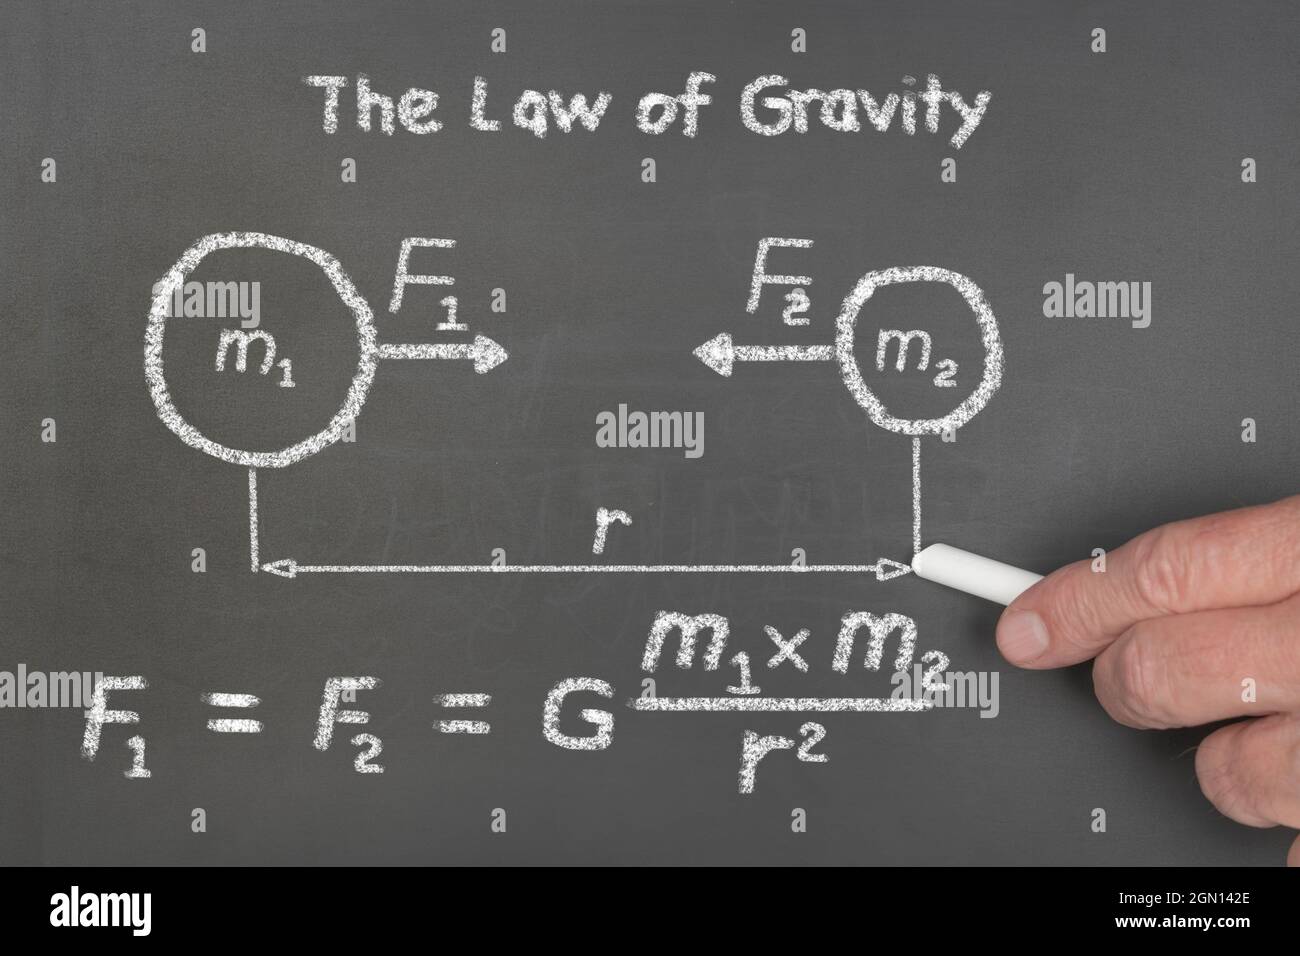 Ein Lehrer erklärt den Schülern Newtons Gravitationsgesetz-Diagramm, eine theoretische physikalische Gleichung, die das Verhalten von Kraft und Masse beschreibt. Stockfoto